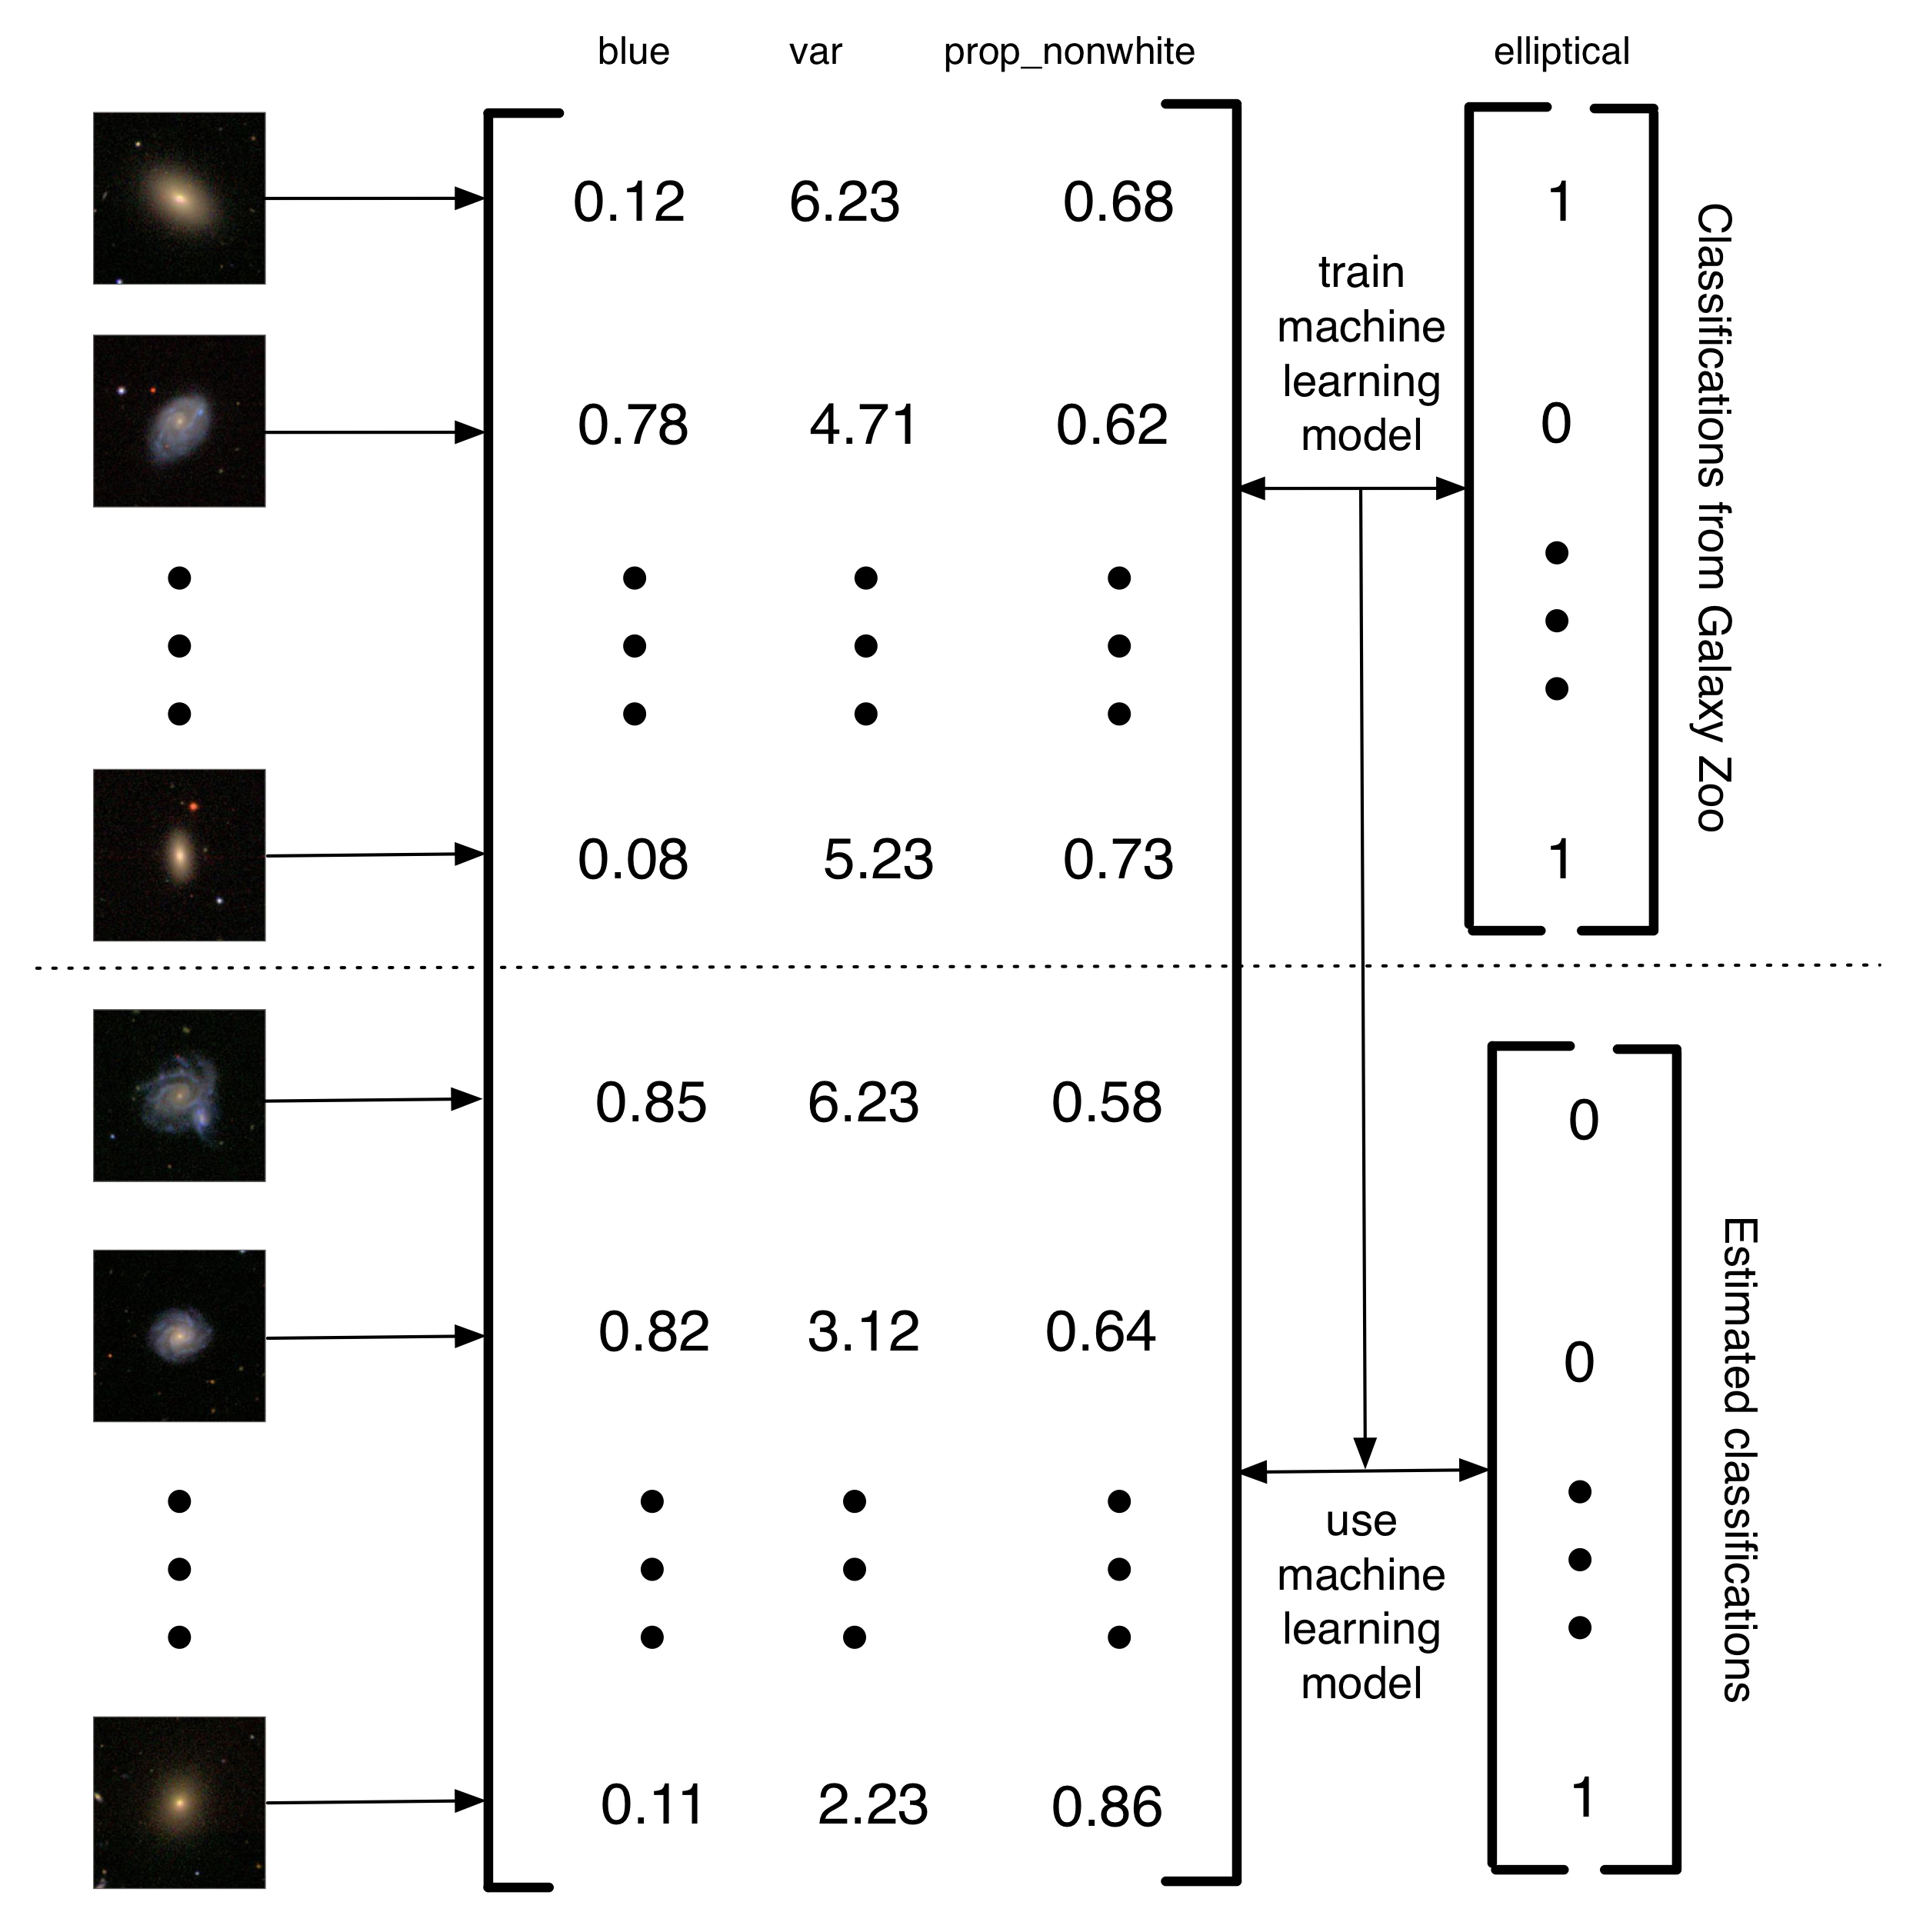 Figure 5.4: Description simplifiée de la façon dont Banerji et al. (2010) ont utilisé les classifications Galaxy Zoo de former un modèle d'apprentissage de la machine à faire le classement galaxie. Images de galaxies ont été converties dans une matrice de fonctionnalités. Dans cet exemple simplifié, il y a trois caractéristiques (la quantité de bleu dans l'image, la variance de la luminosité des pixels, et la proportion de pixels non blancs). Ensuite, pour un sous-ensemble des images, les étiquettes Galaxy Zoo sont utilisés pour former un modèle d'apprentissage de la machine. Enfin, l'apprentissage de la machine est utilisée pour estimer les classifications pour les galaxies restantes. J'appelle ce genre de projet, un projet de calcul humain de deuxième génération parce que, plutôt que d'avoir l'homme à résoudre un problème, ils ont les humains construisent un ensemble de données qui peut être utilisé pour former un ordinateur pour résoudre le problème. L'avantage de cette approche assistée par ordinateur est qu'il vous permet de gérer des quantités essentiellement infinies de données en utilisant seulement une quantité limitée de l'effort humain.